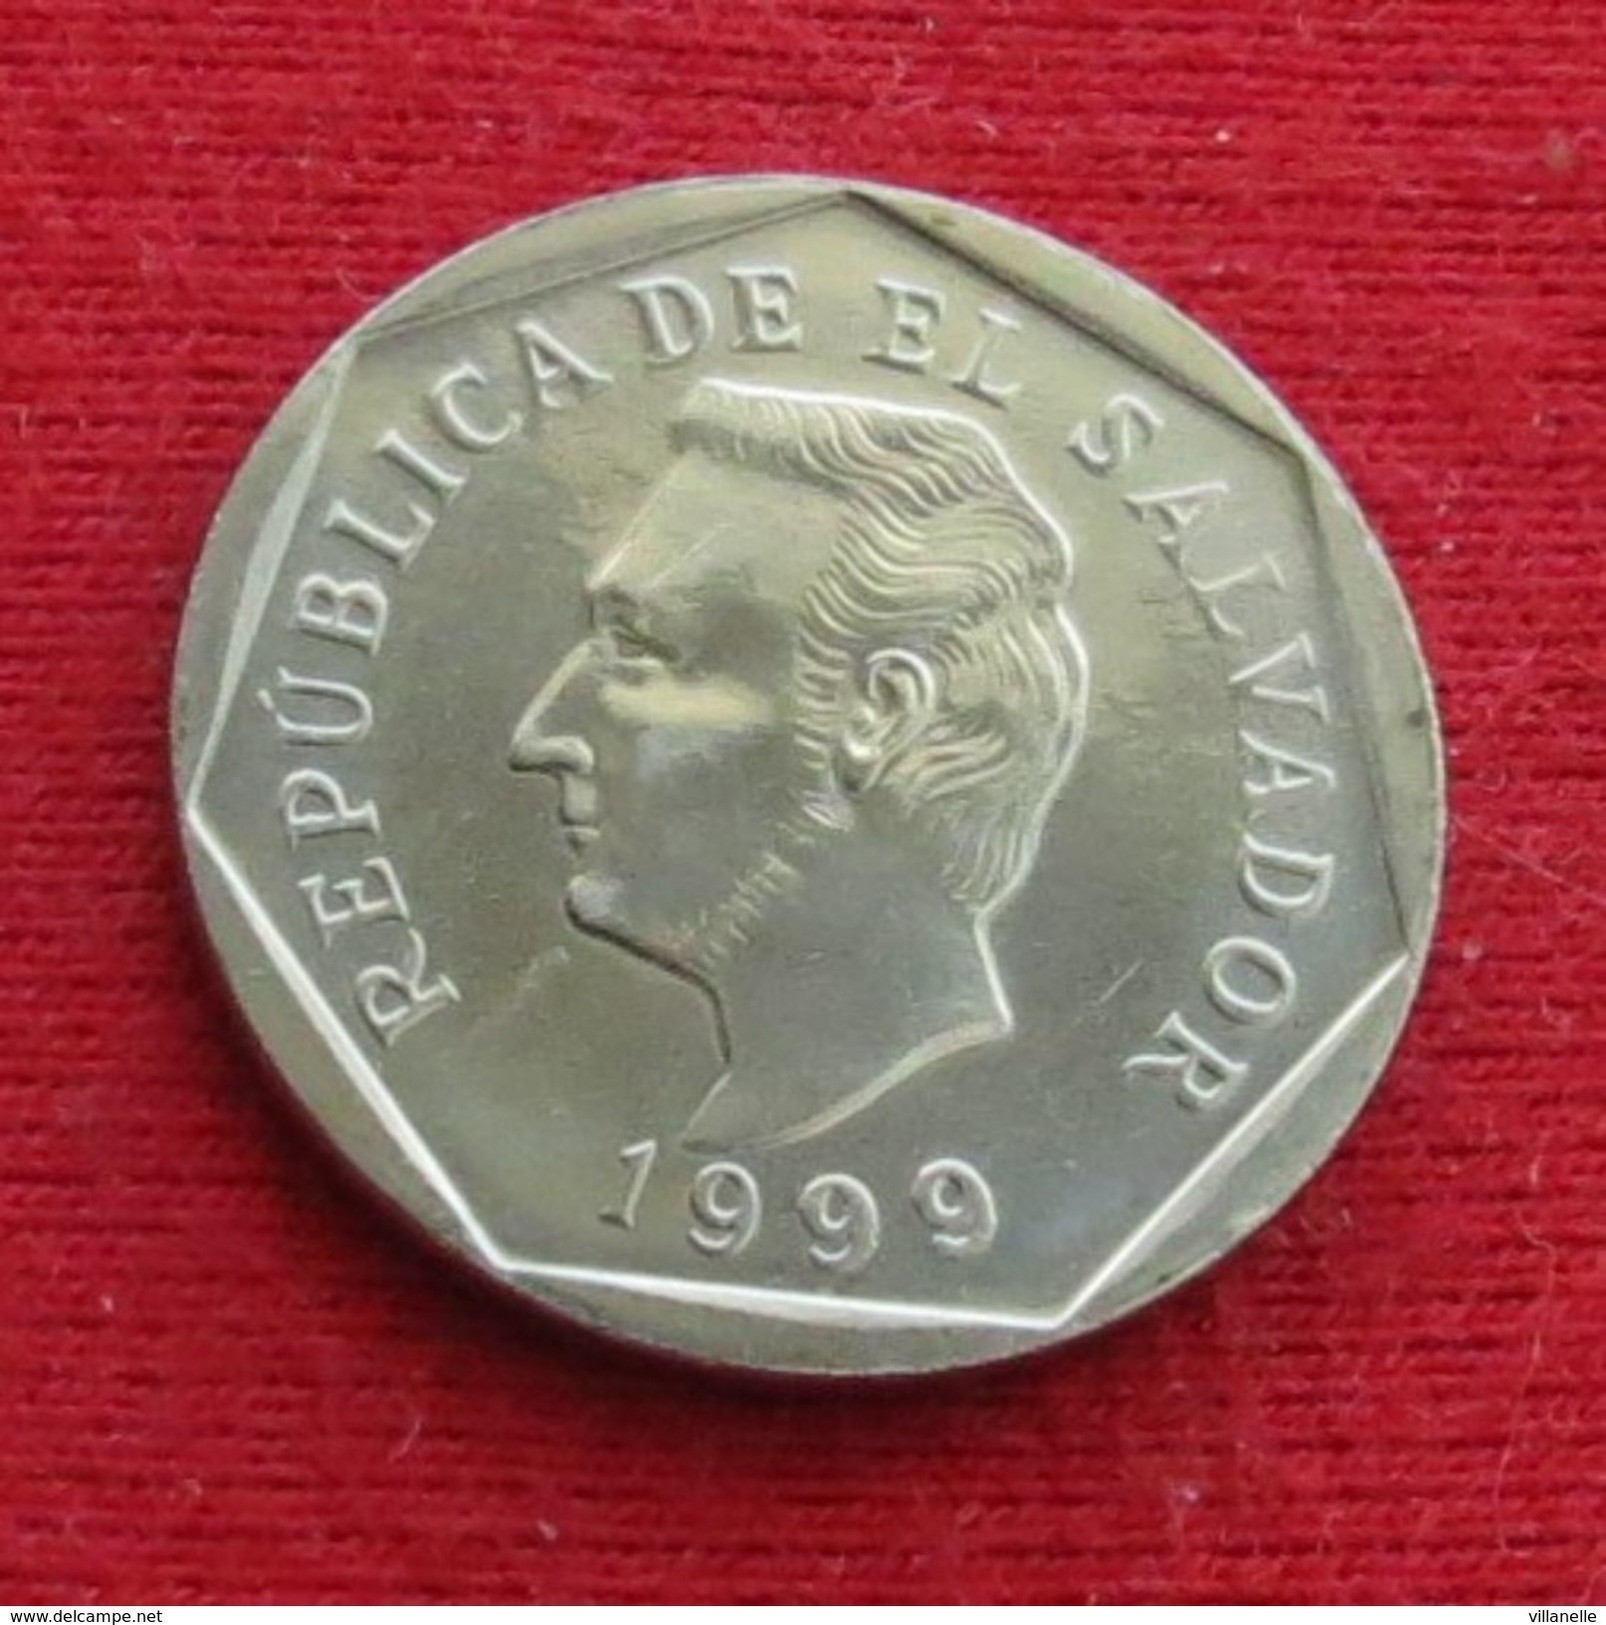 El Salvador 10 Centavos 1999 UNC ºº - El Salvador